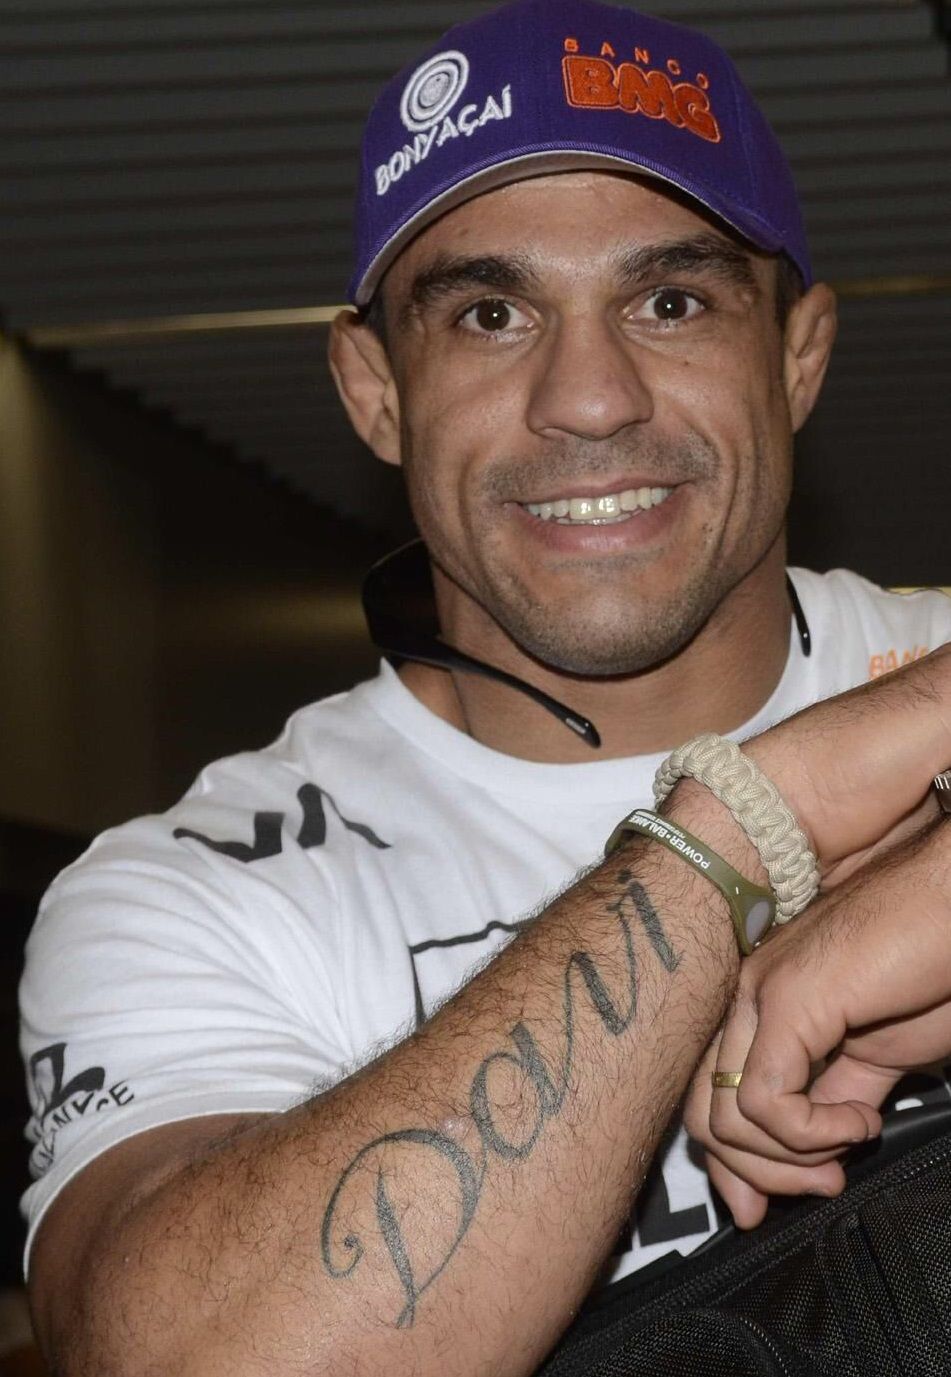 Davi Tattoo en el brazo derecho de Vitor Belfort